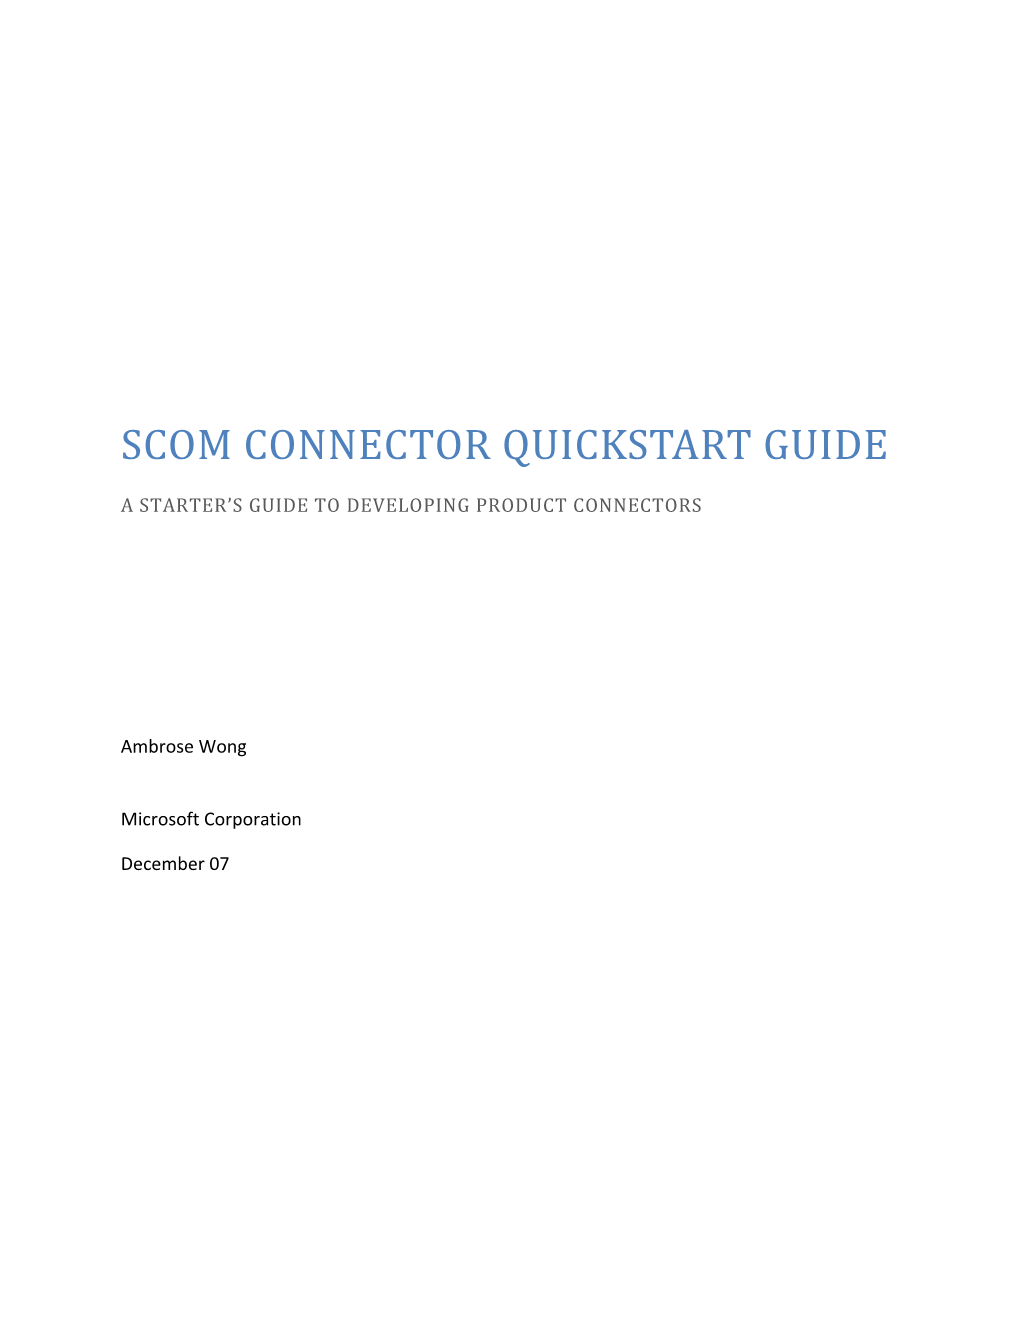 SCOM Connector Quickstart Guide